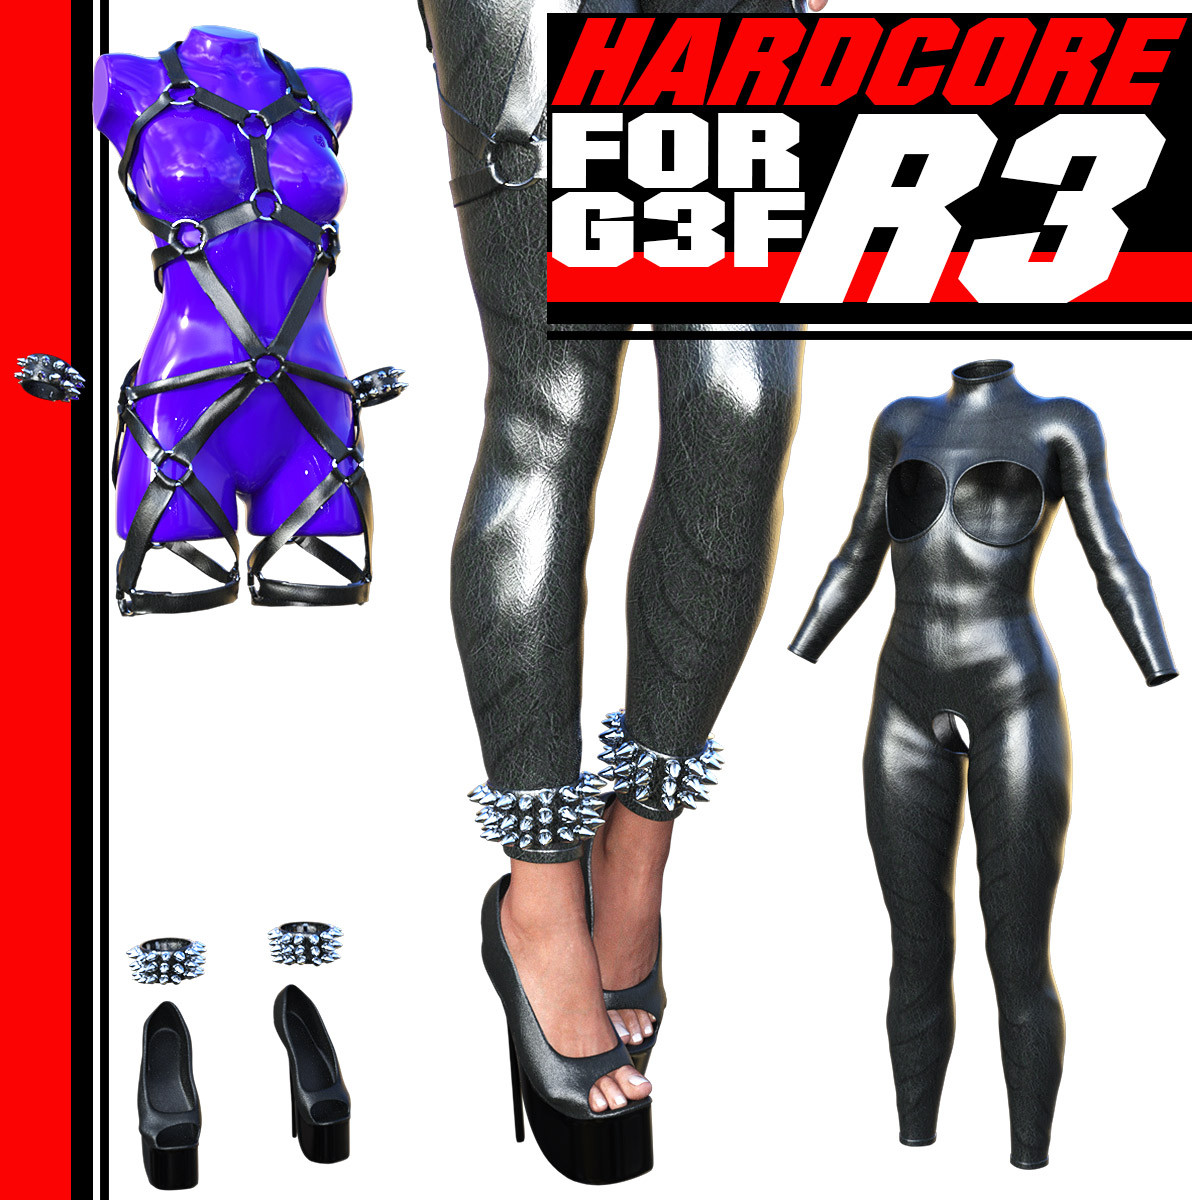 HARDCORE-R3 for G3 females